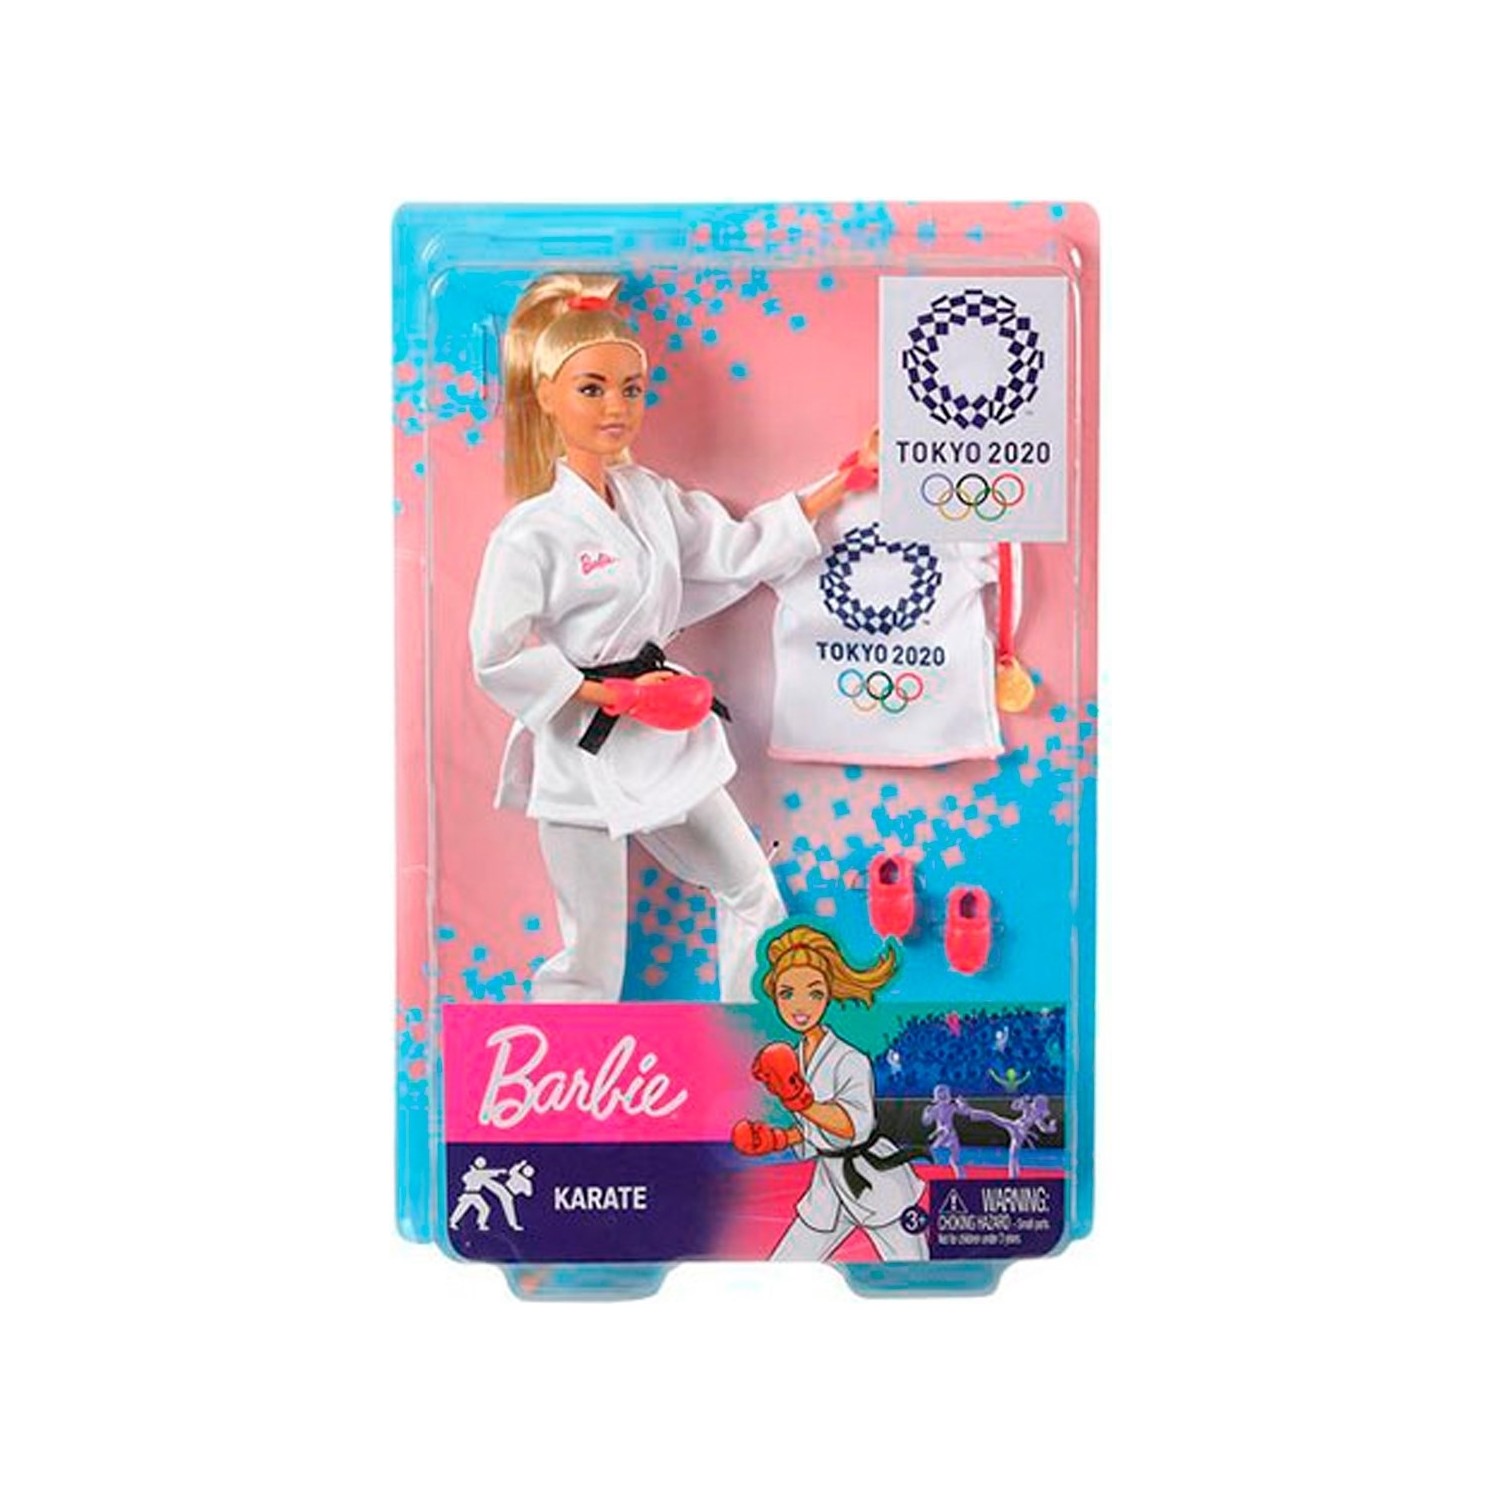 Кукла Barbie на Олимпийских играх дзюдо олимпийские игры tokyo 2020 olympic games tokyo 2020 русская версия xbox one